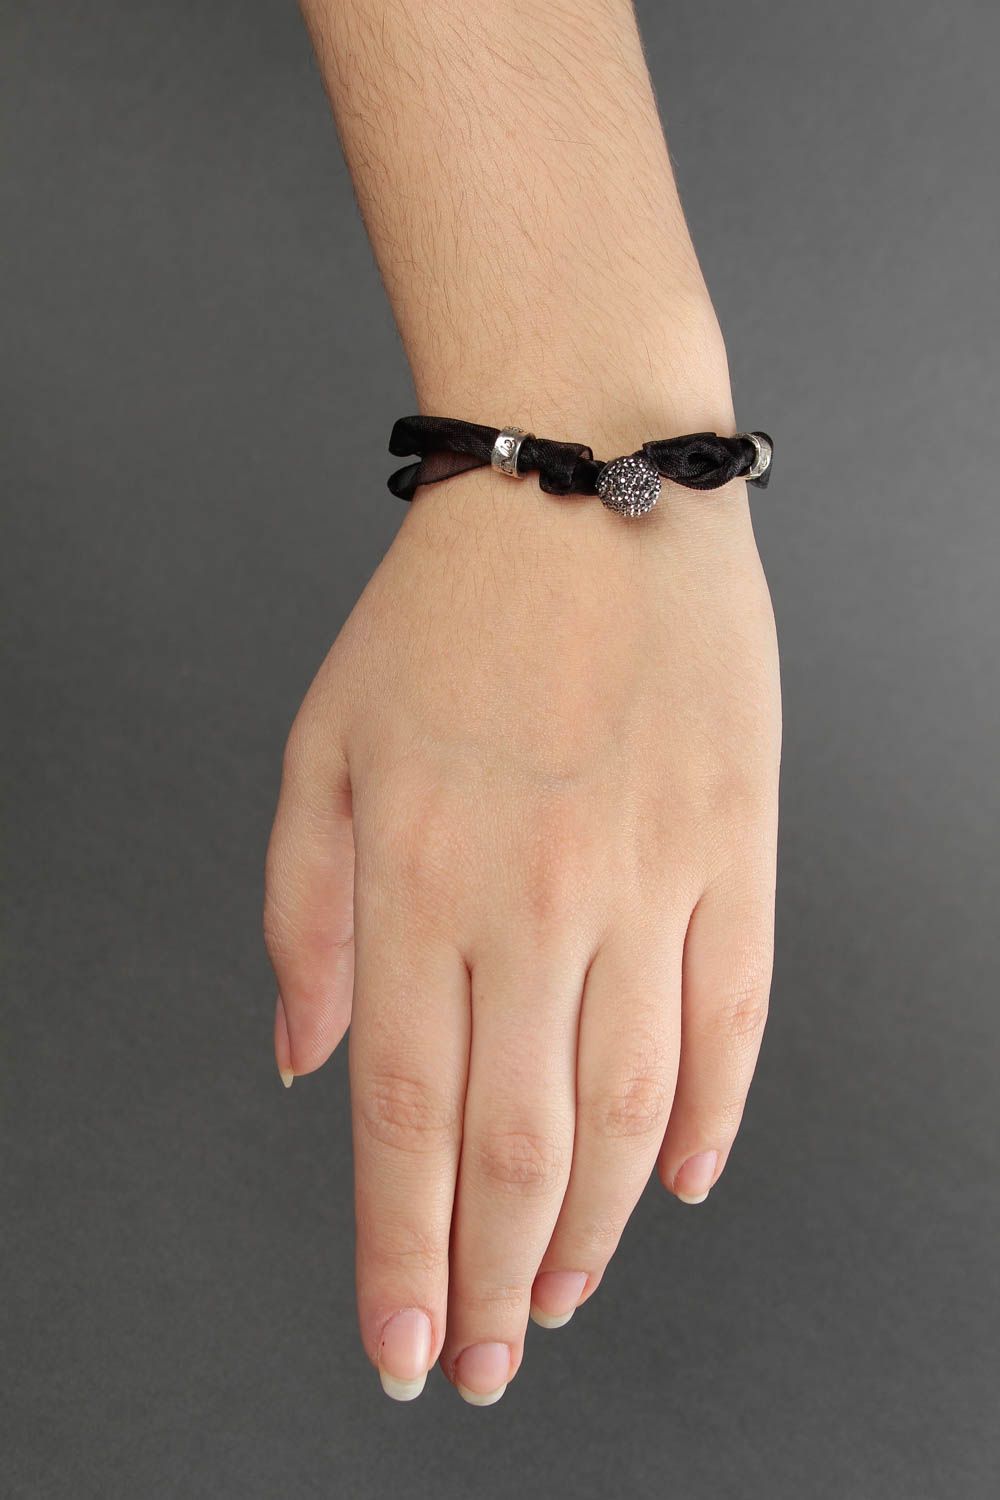 Браслет ручной работы женский браслет с бусиной черный браслет из лент фото 2